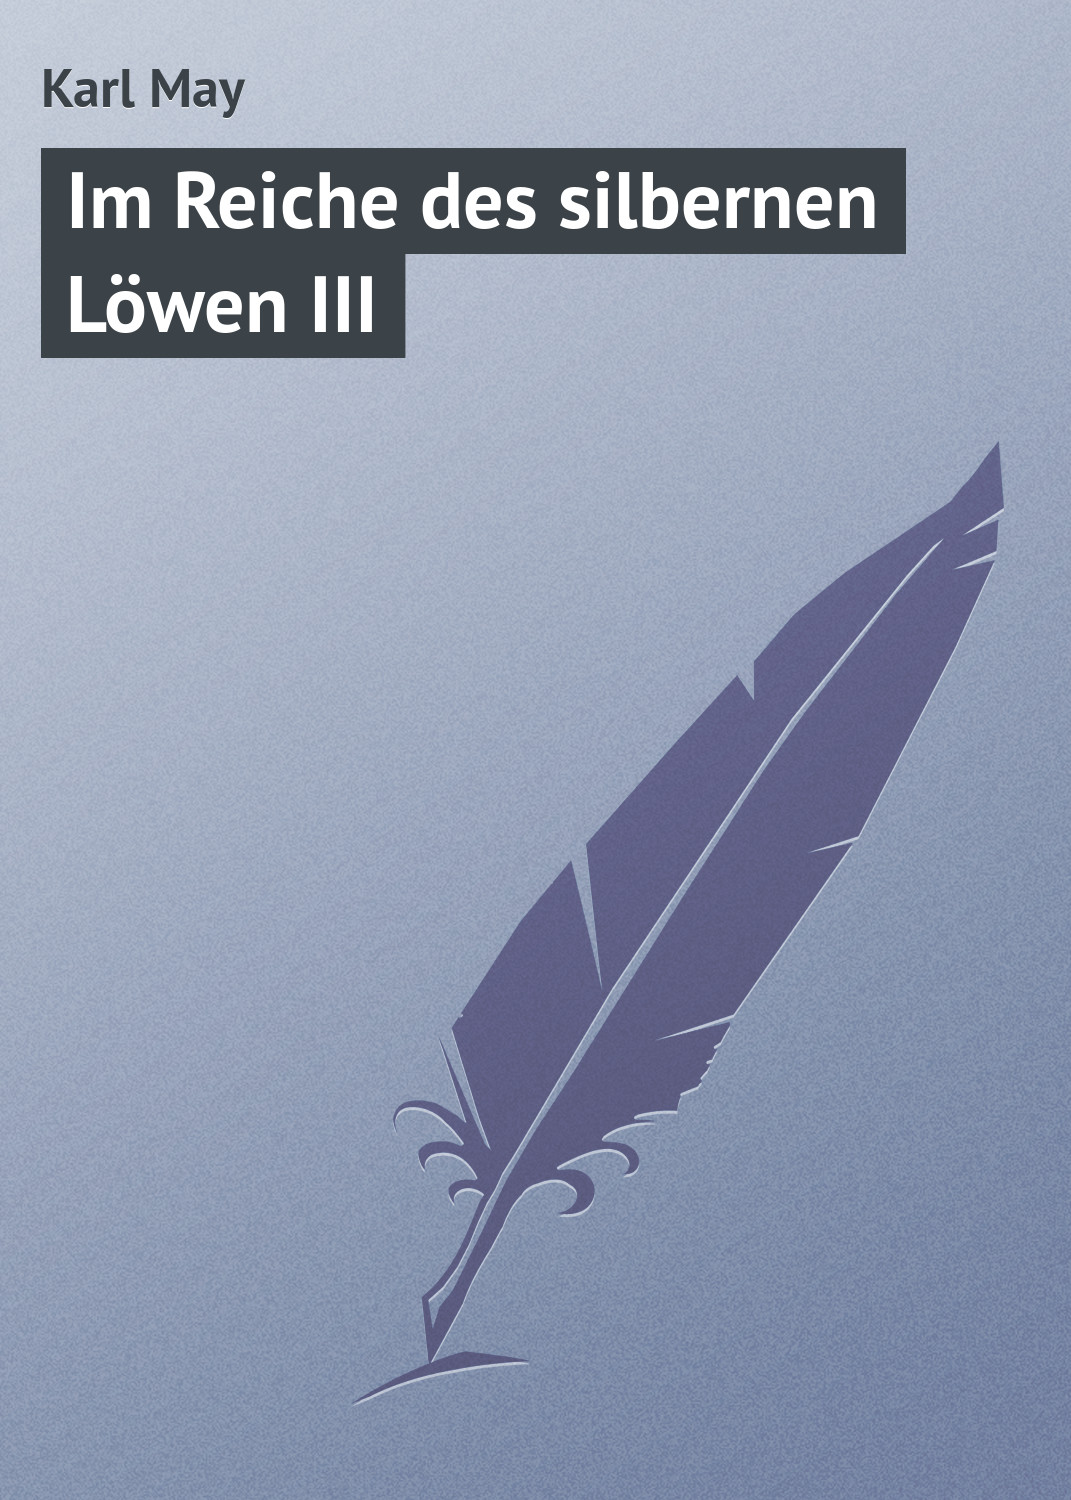 Книга Im Reiche des silbernen Löwen III из серии , созданная Karl May, может относится к жанру Зарубежная старинная литература, Зарубежная классика. Стоимость электронной книги Im Reiche des silbernen Löwen III с идентификатором 21104382 составляет 5.99 руб.